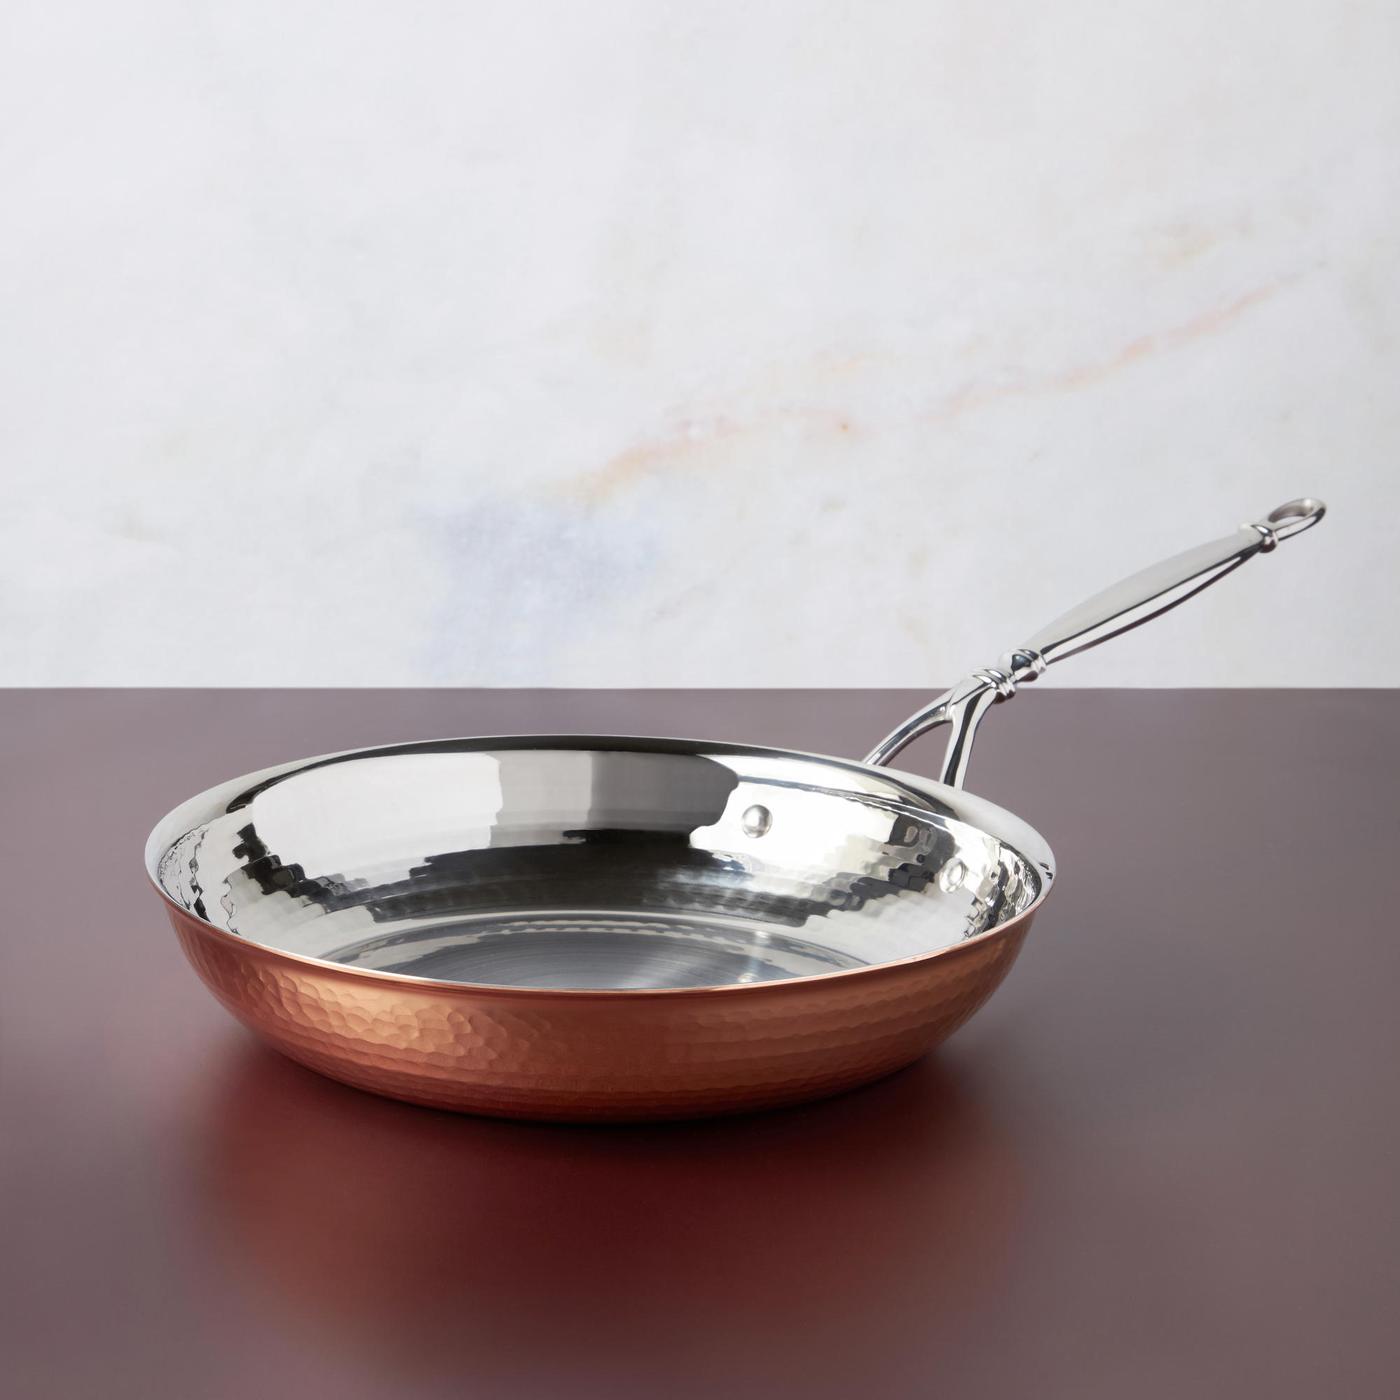 Ruffoni Opus Cupra Copper 10" Frying Pan